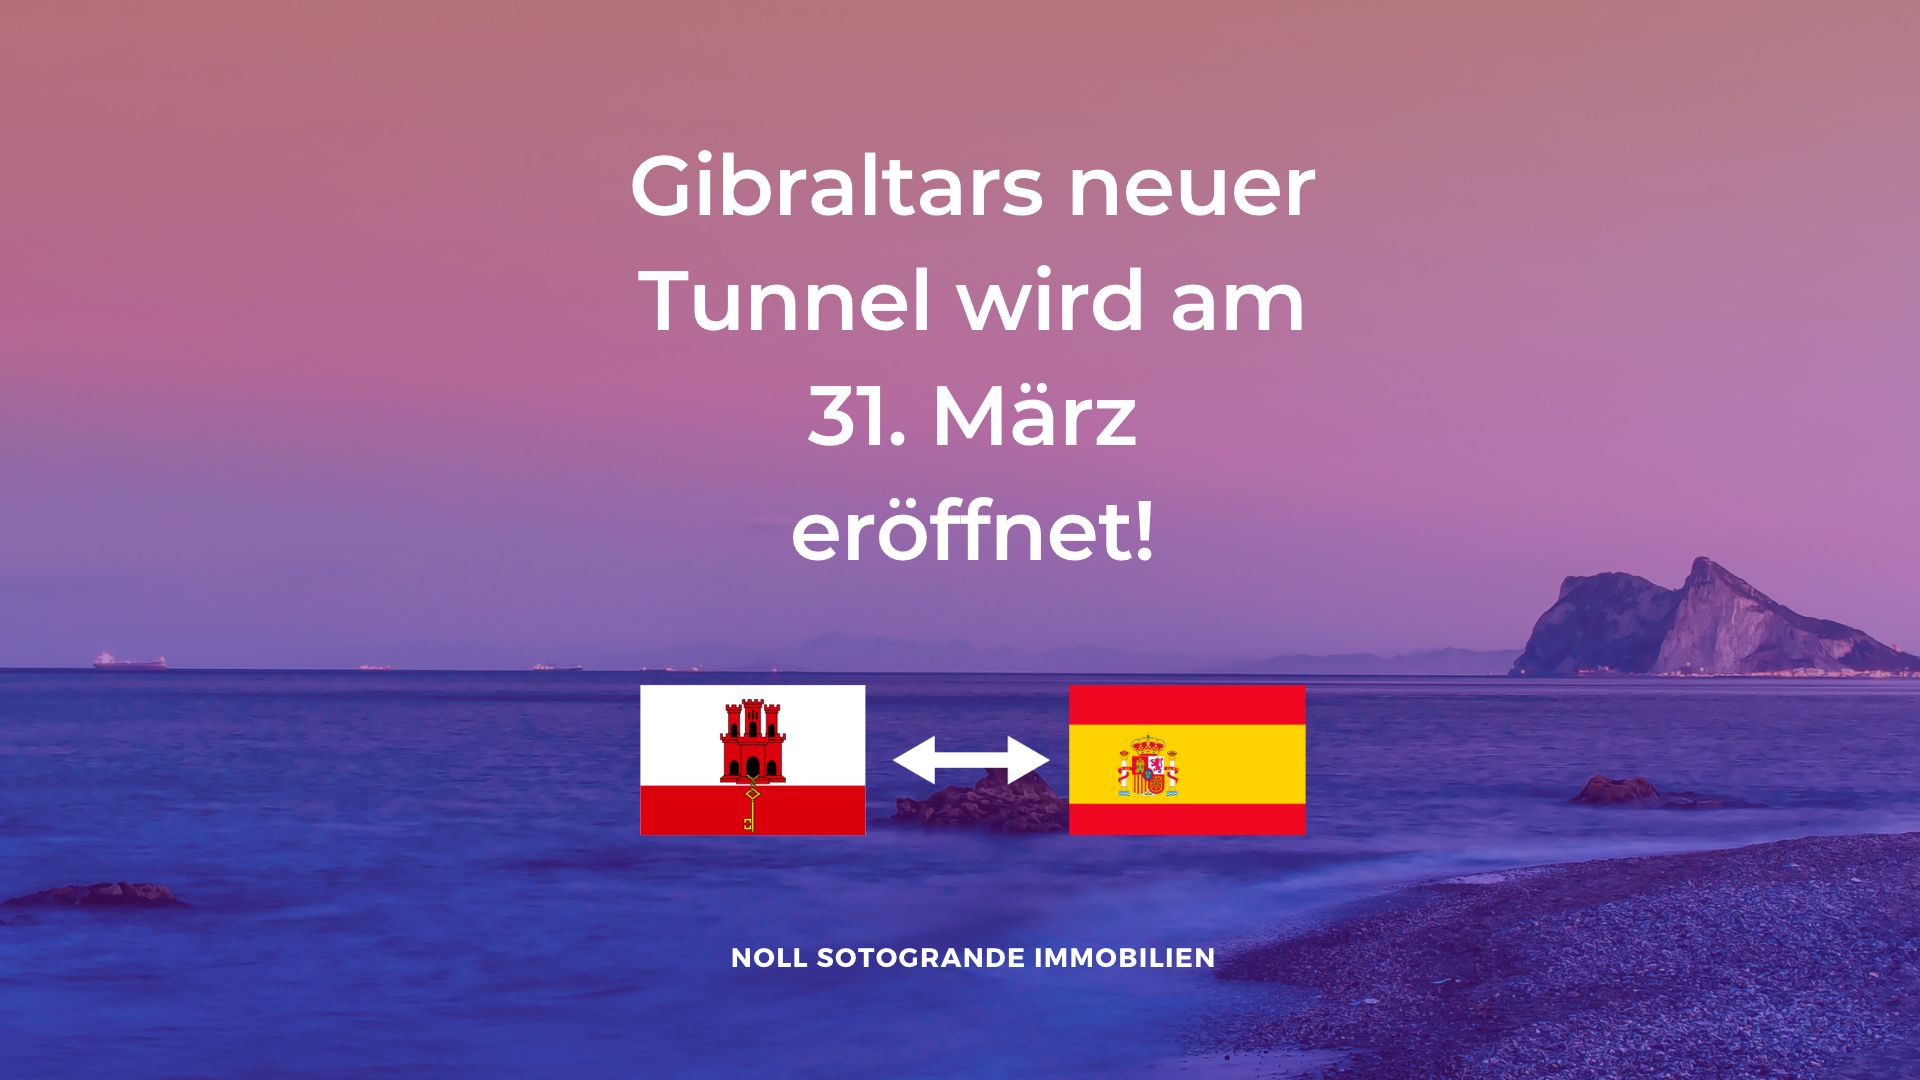 Gibraltars neuer Tunnel wird am 31. März eröffnet